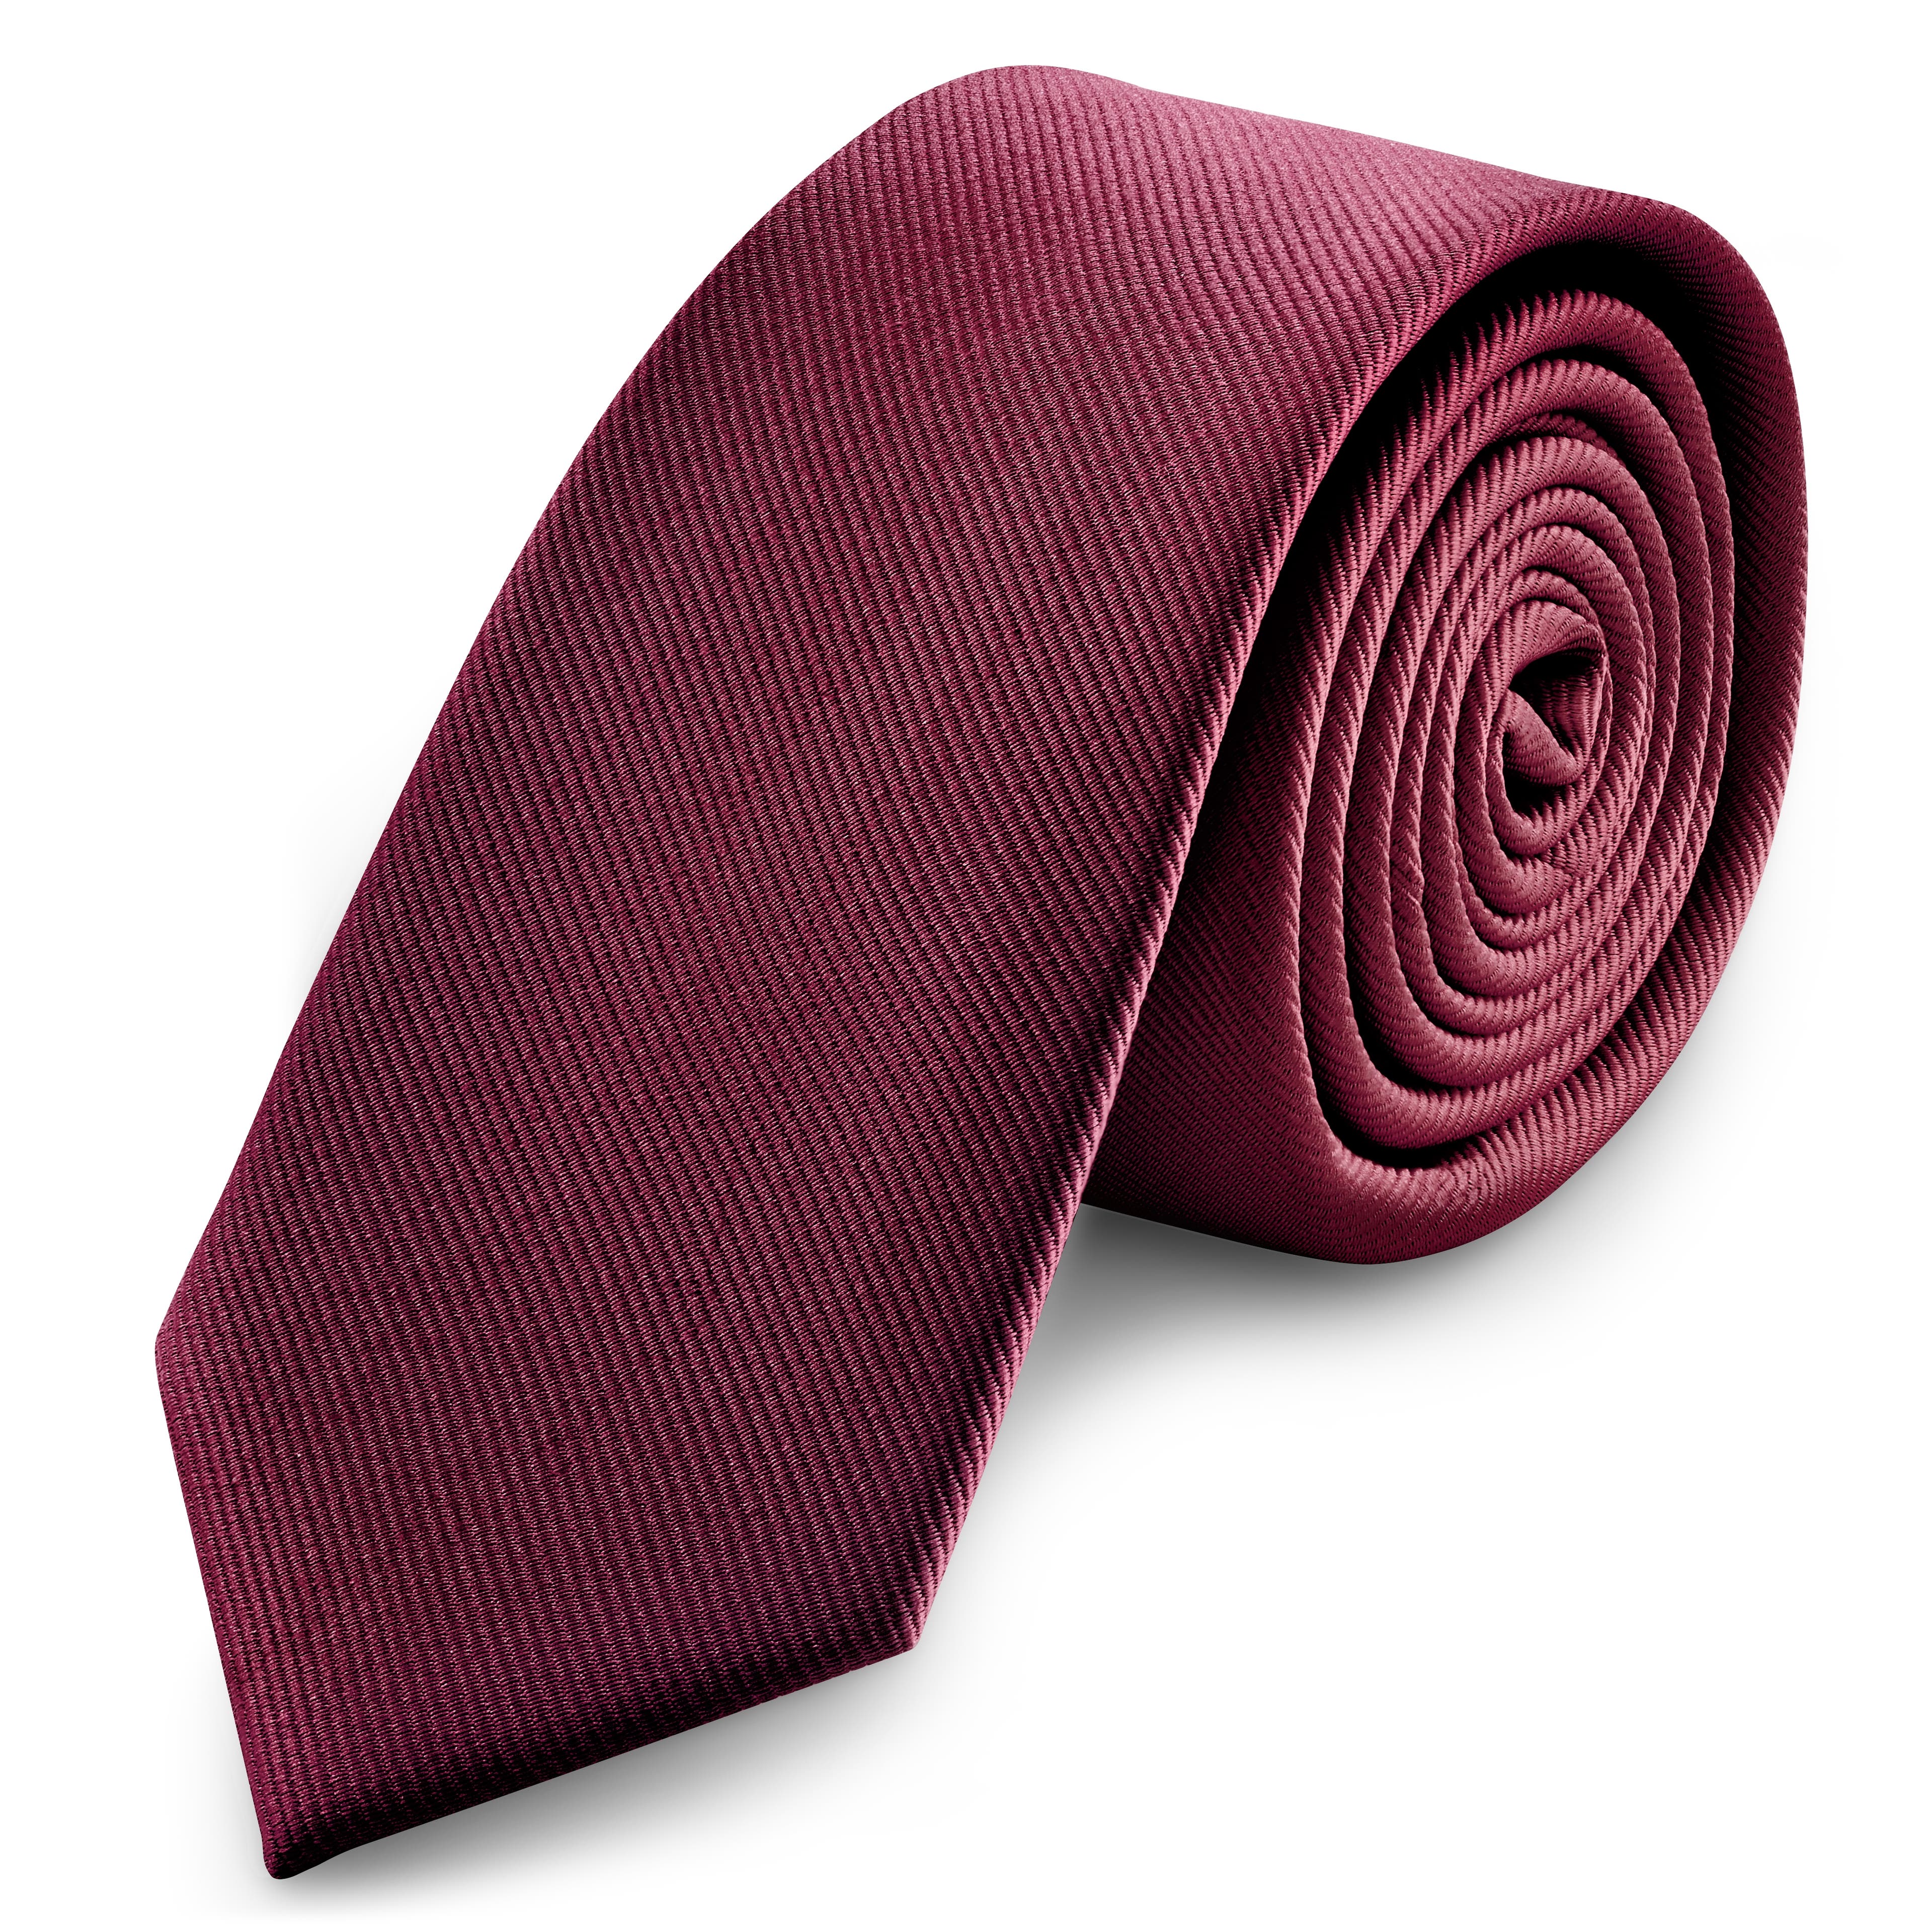 2 3/8" (6 cm) Burgundy Grosgrain Skinny Tie